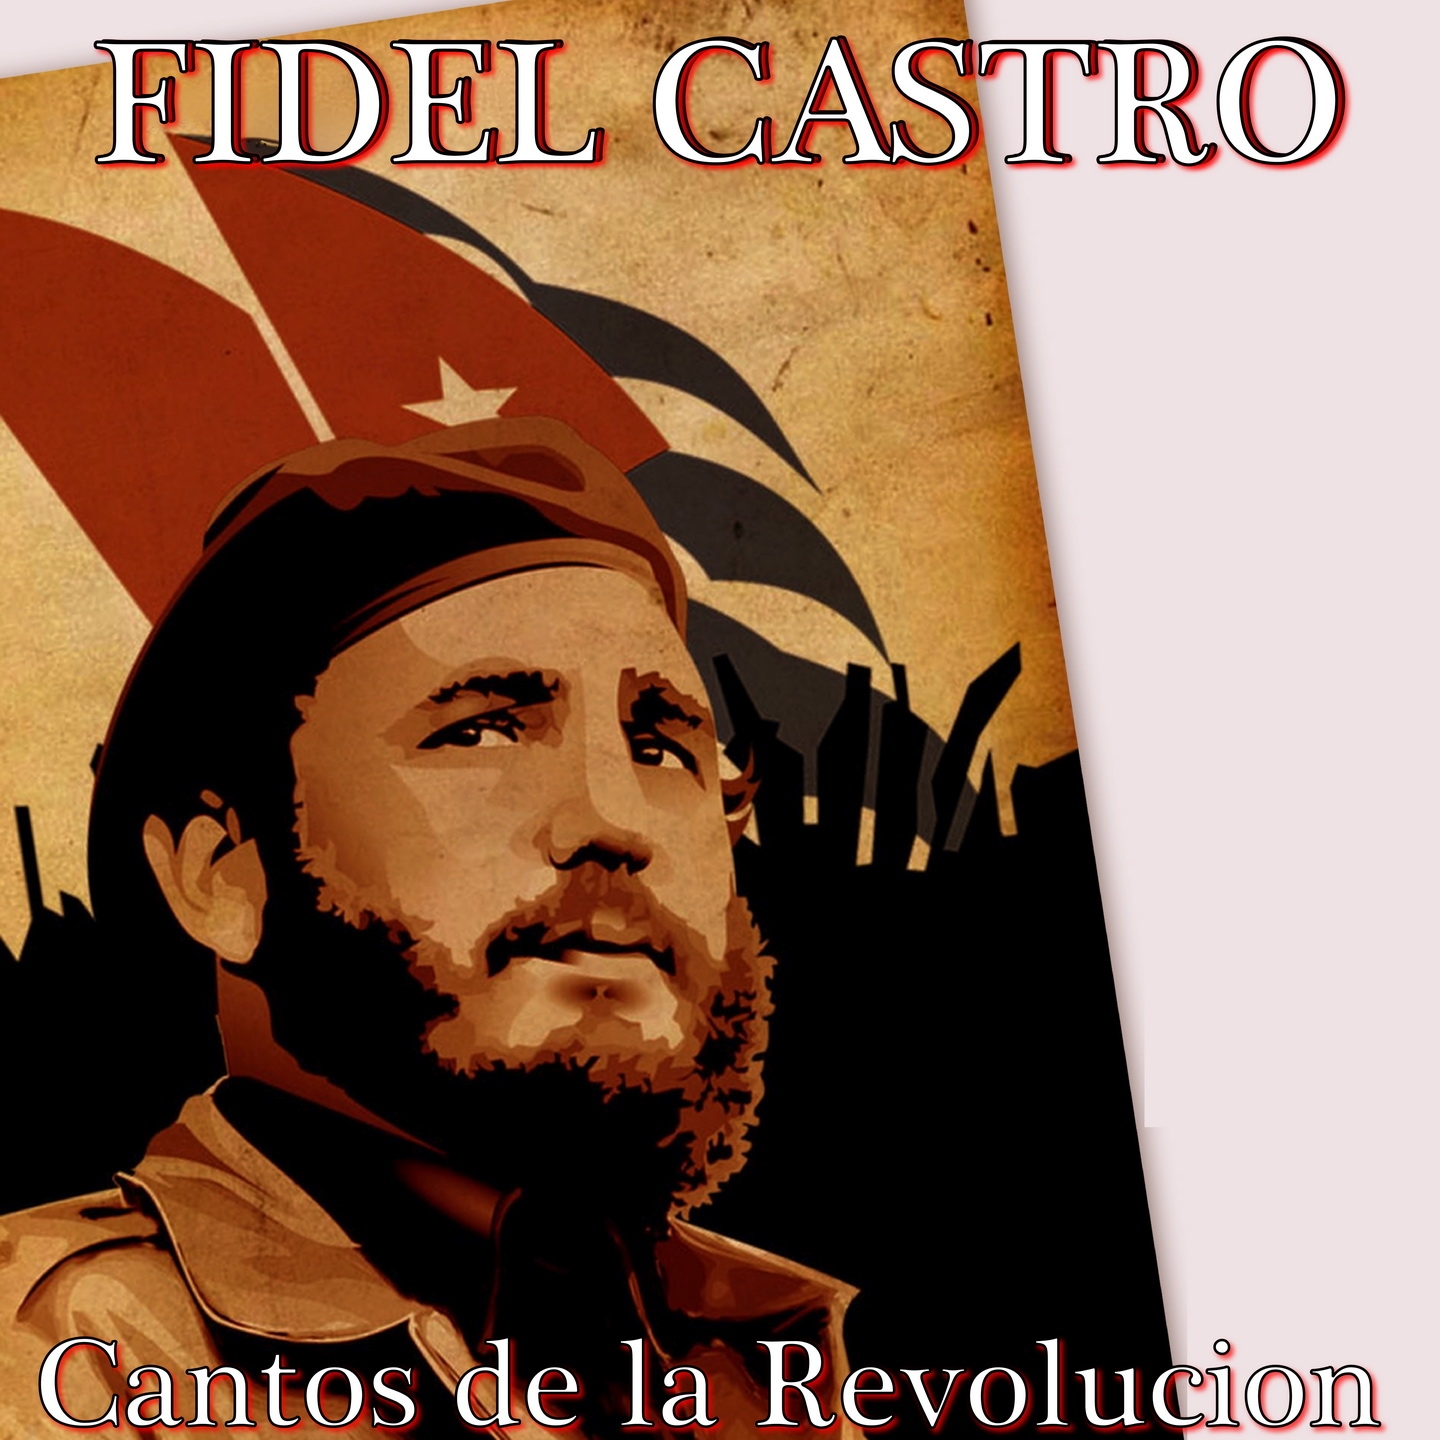 Fidel Castro: Cantos de la Revolucion, Vol. 1